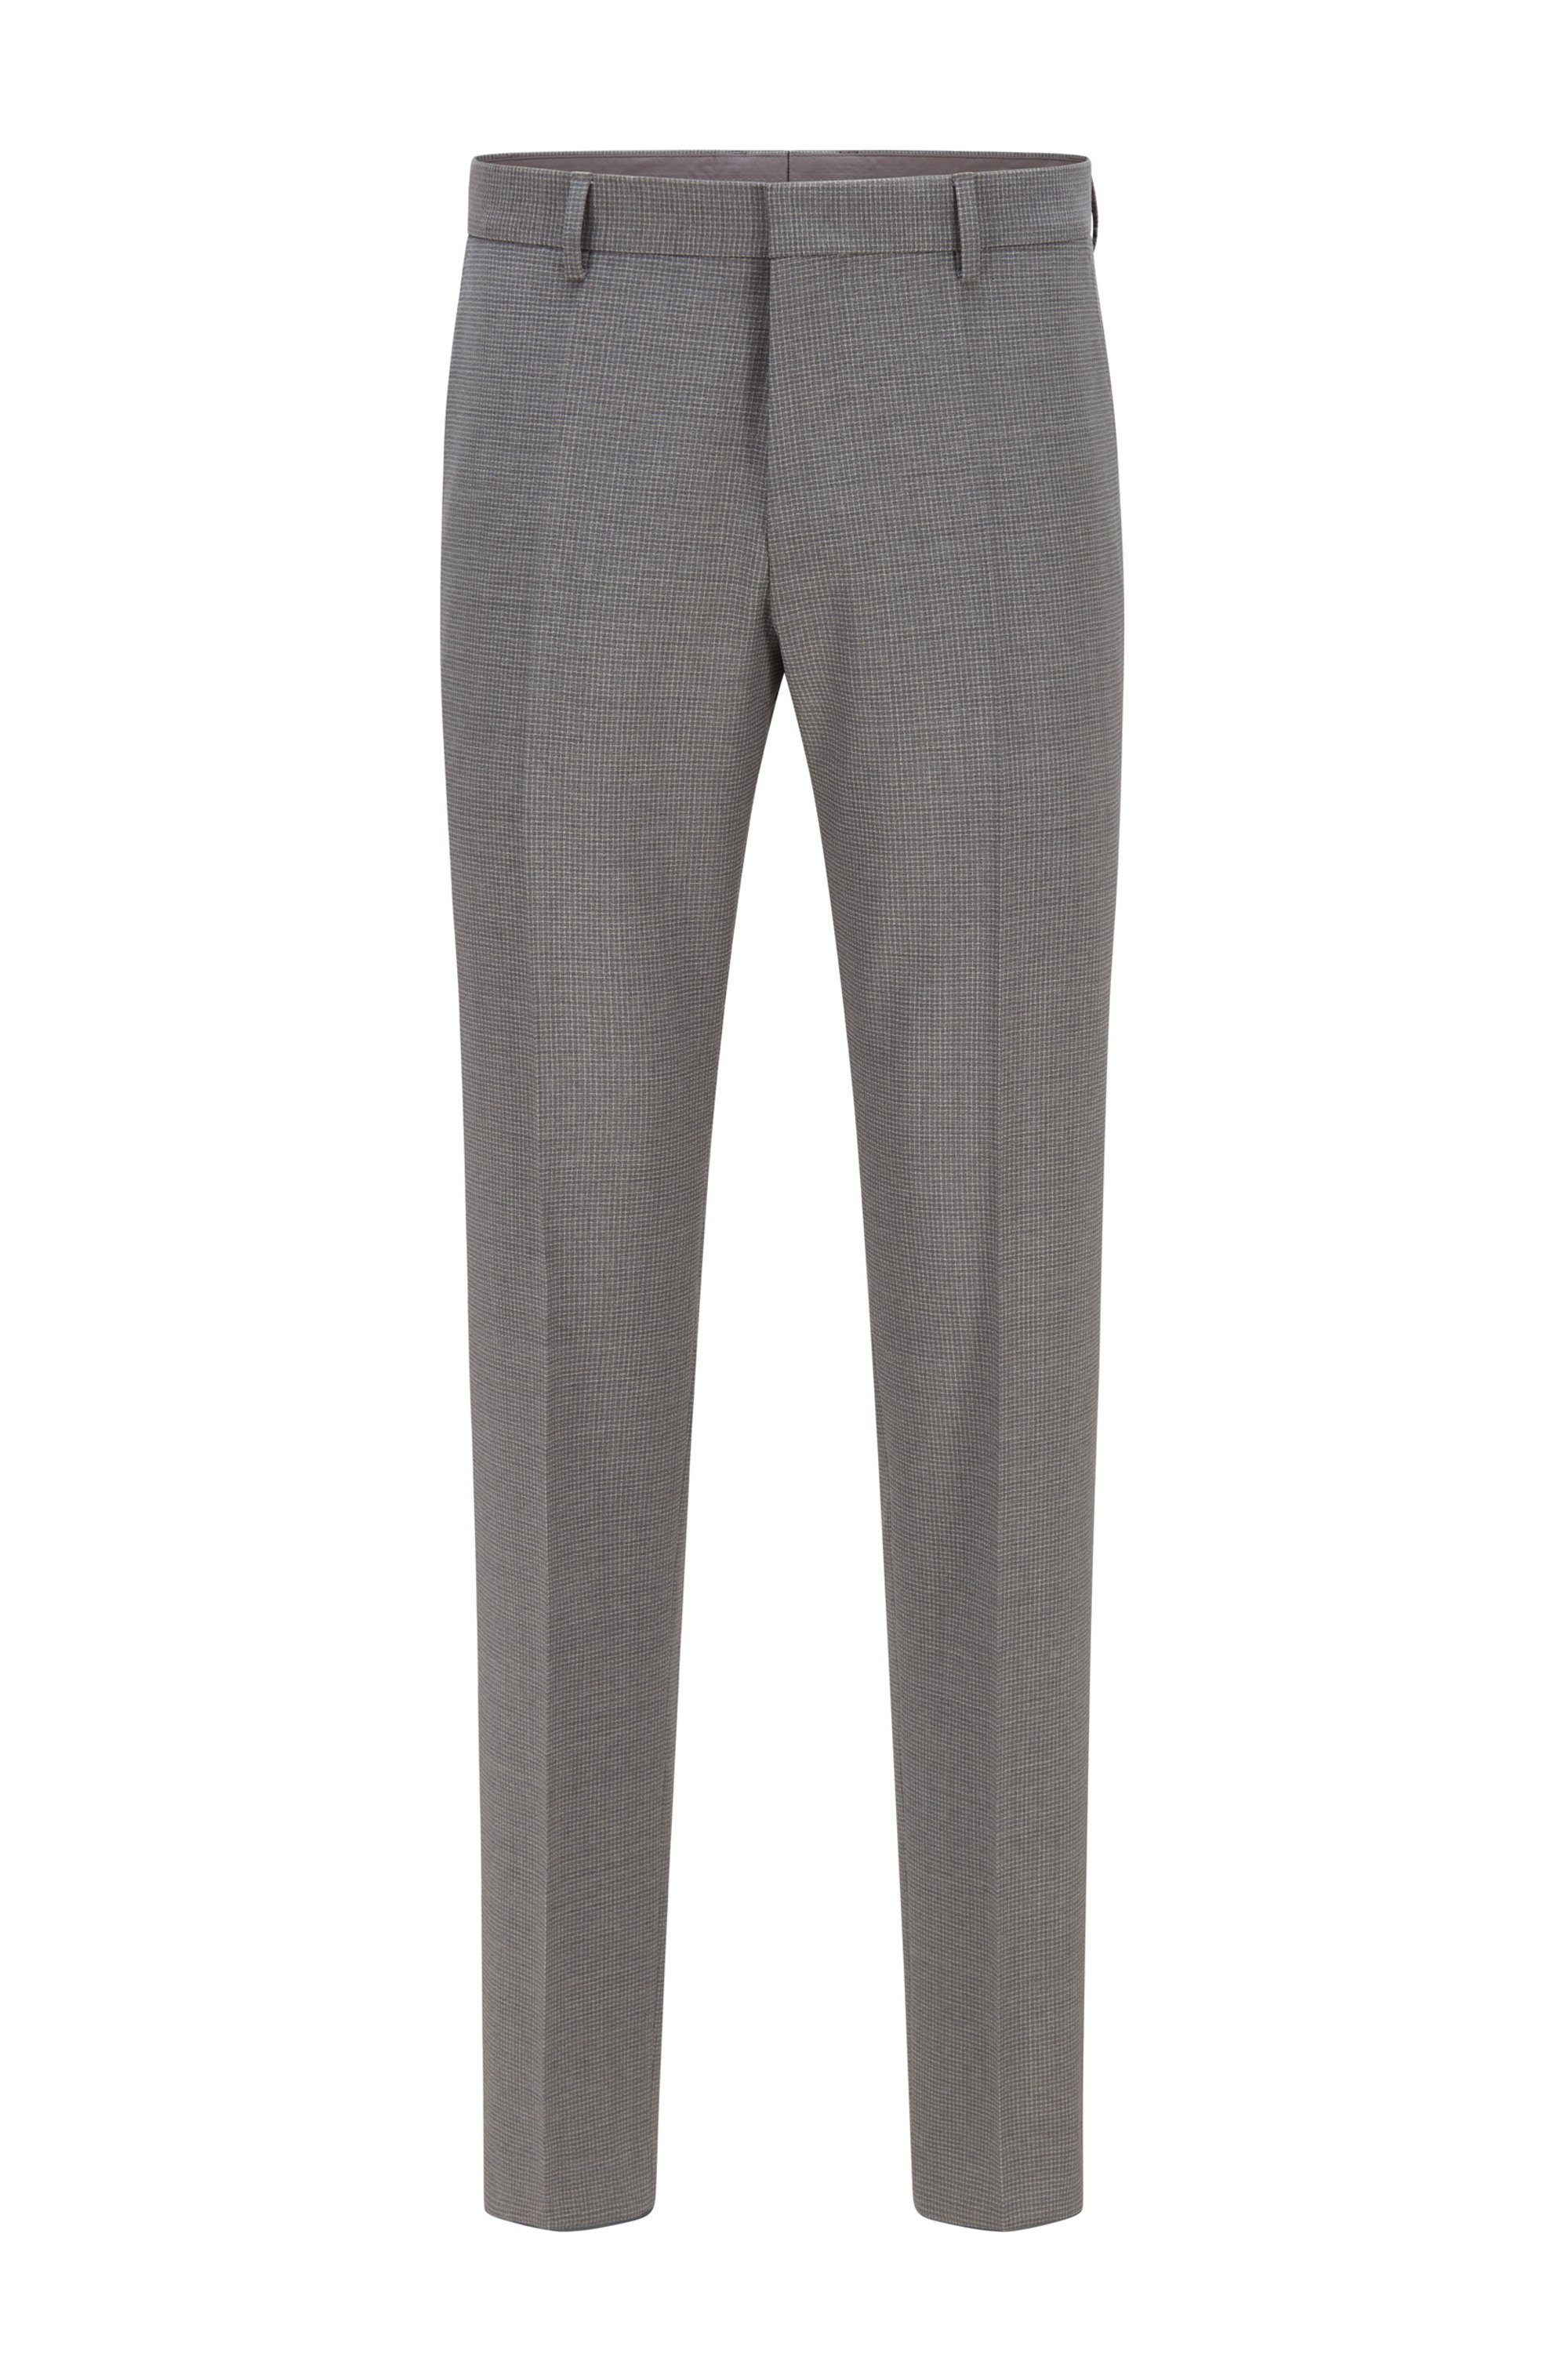 Slim-fit pants in patterned virgin wool, Silver